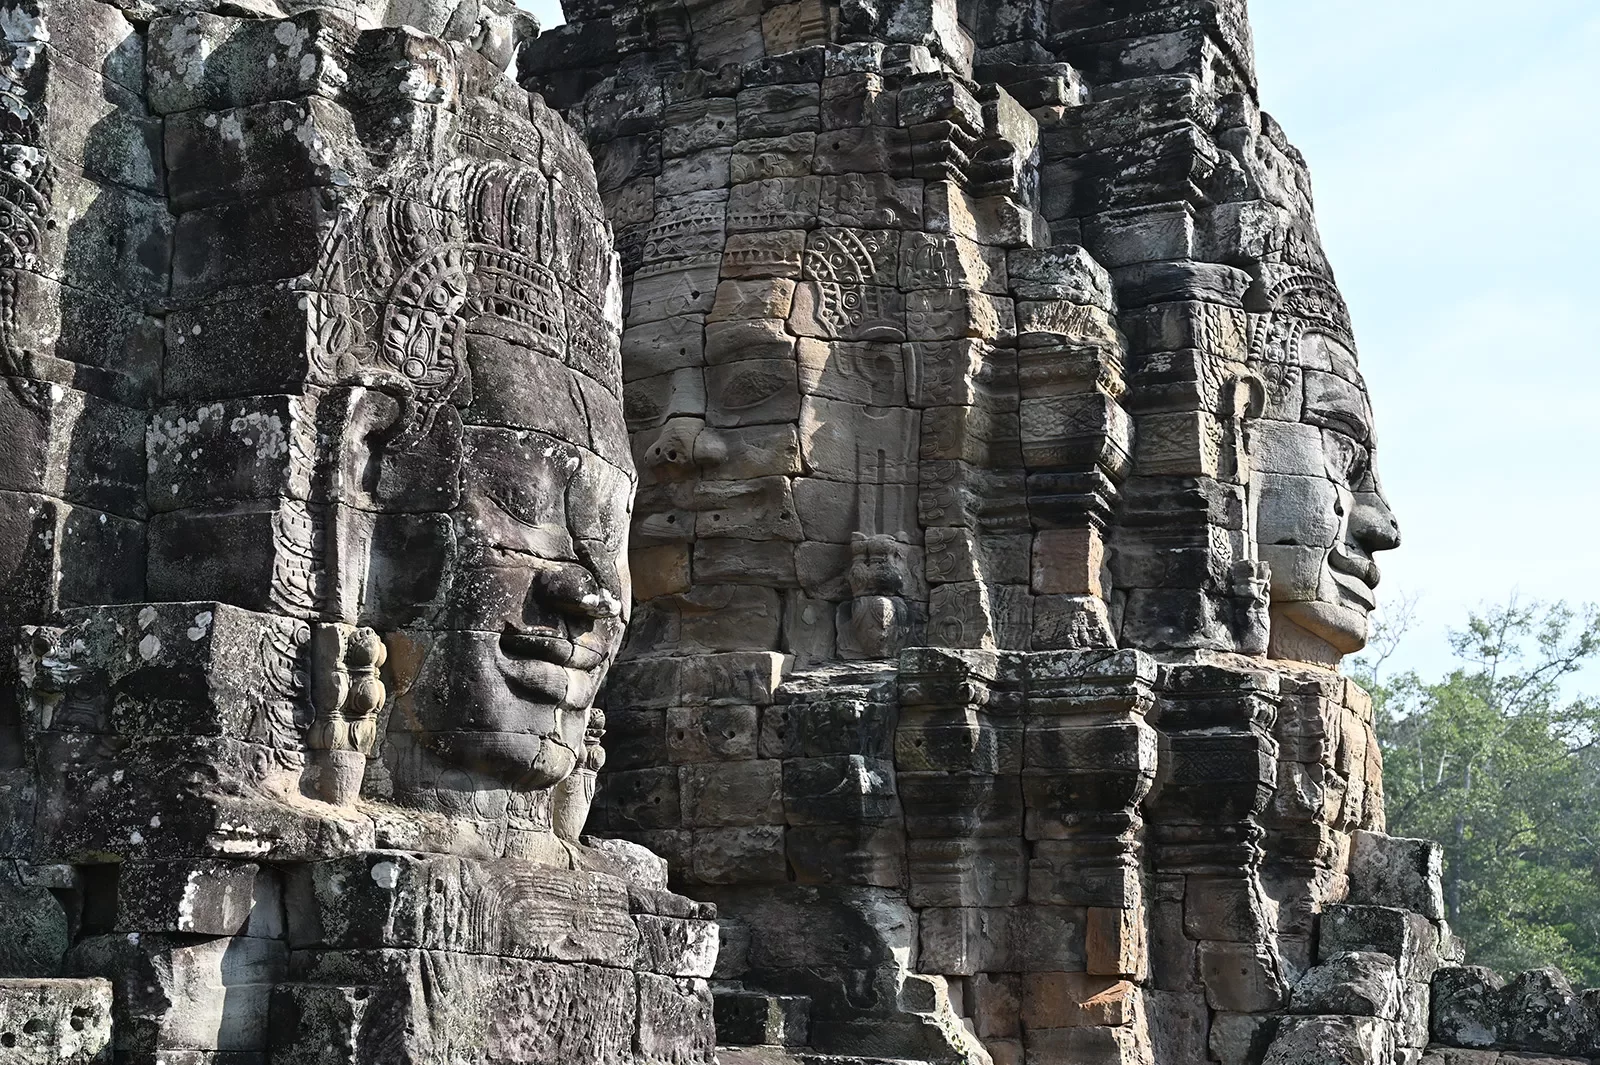 Statues and facades of Angkor Wat